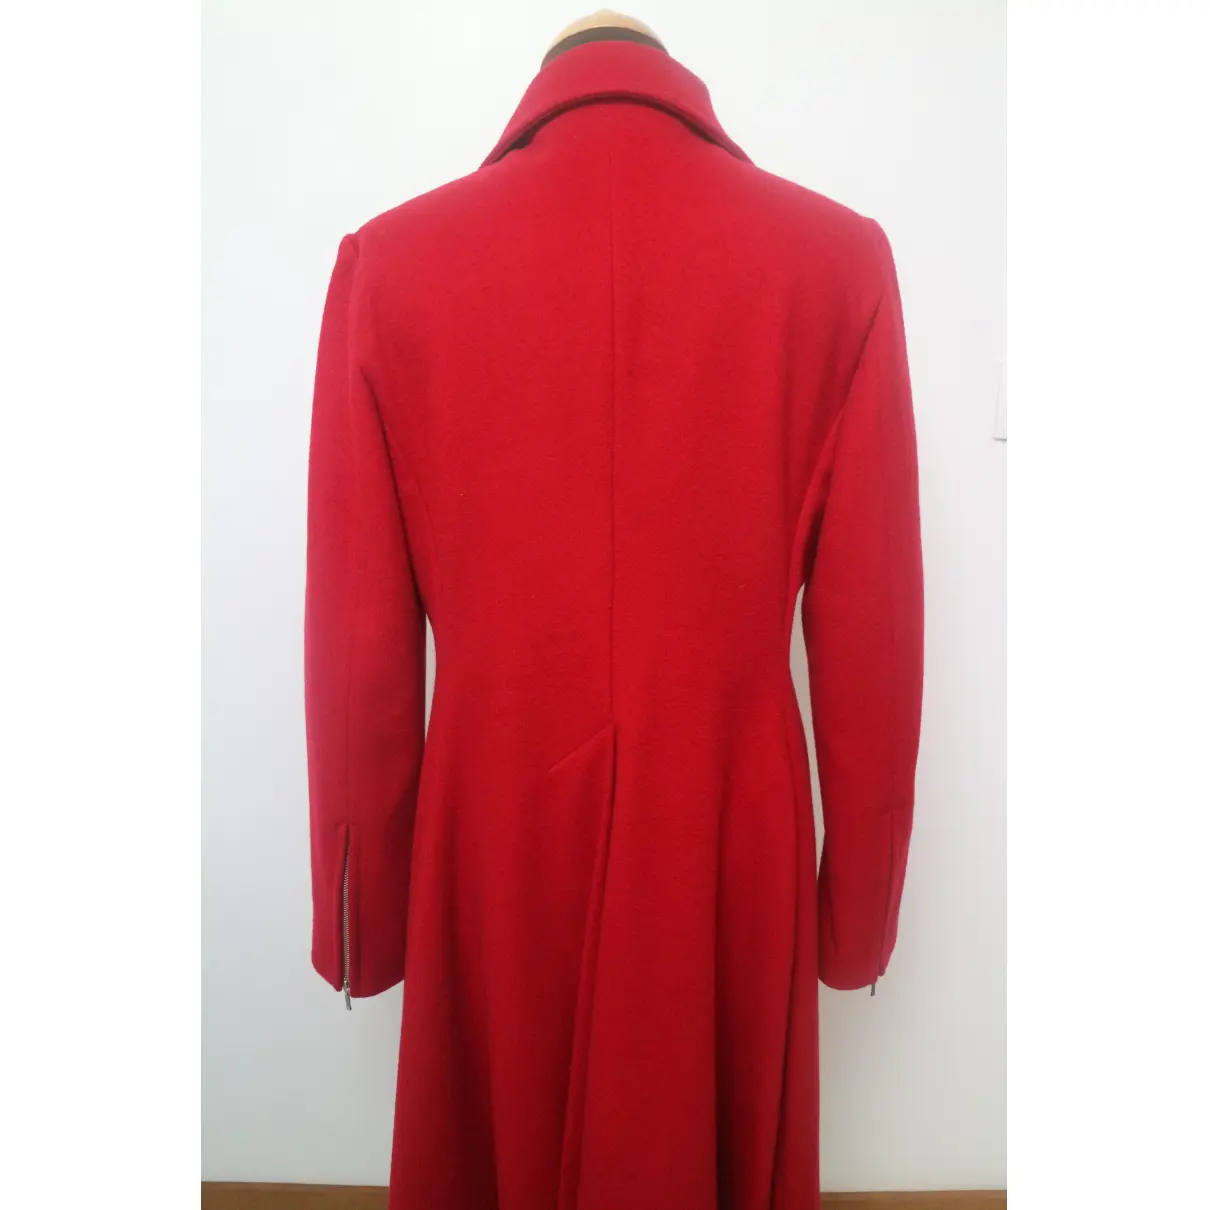 Buy Iro Wool coat online